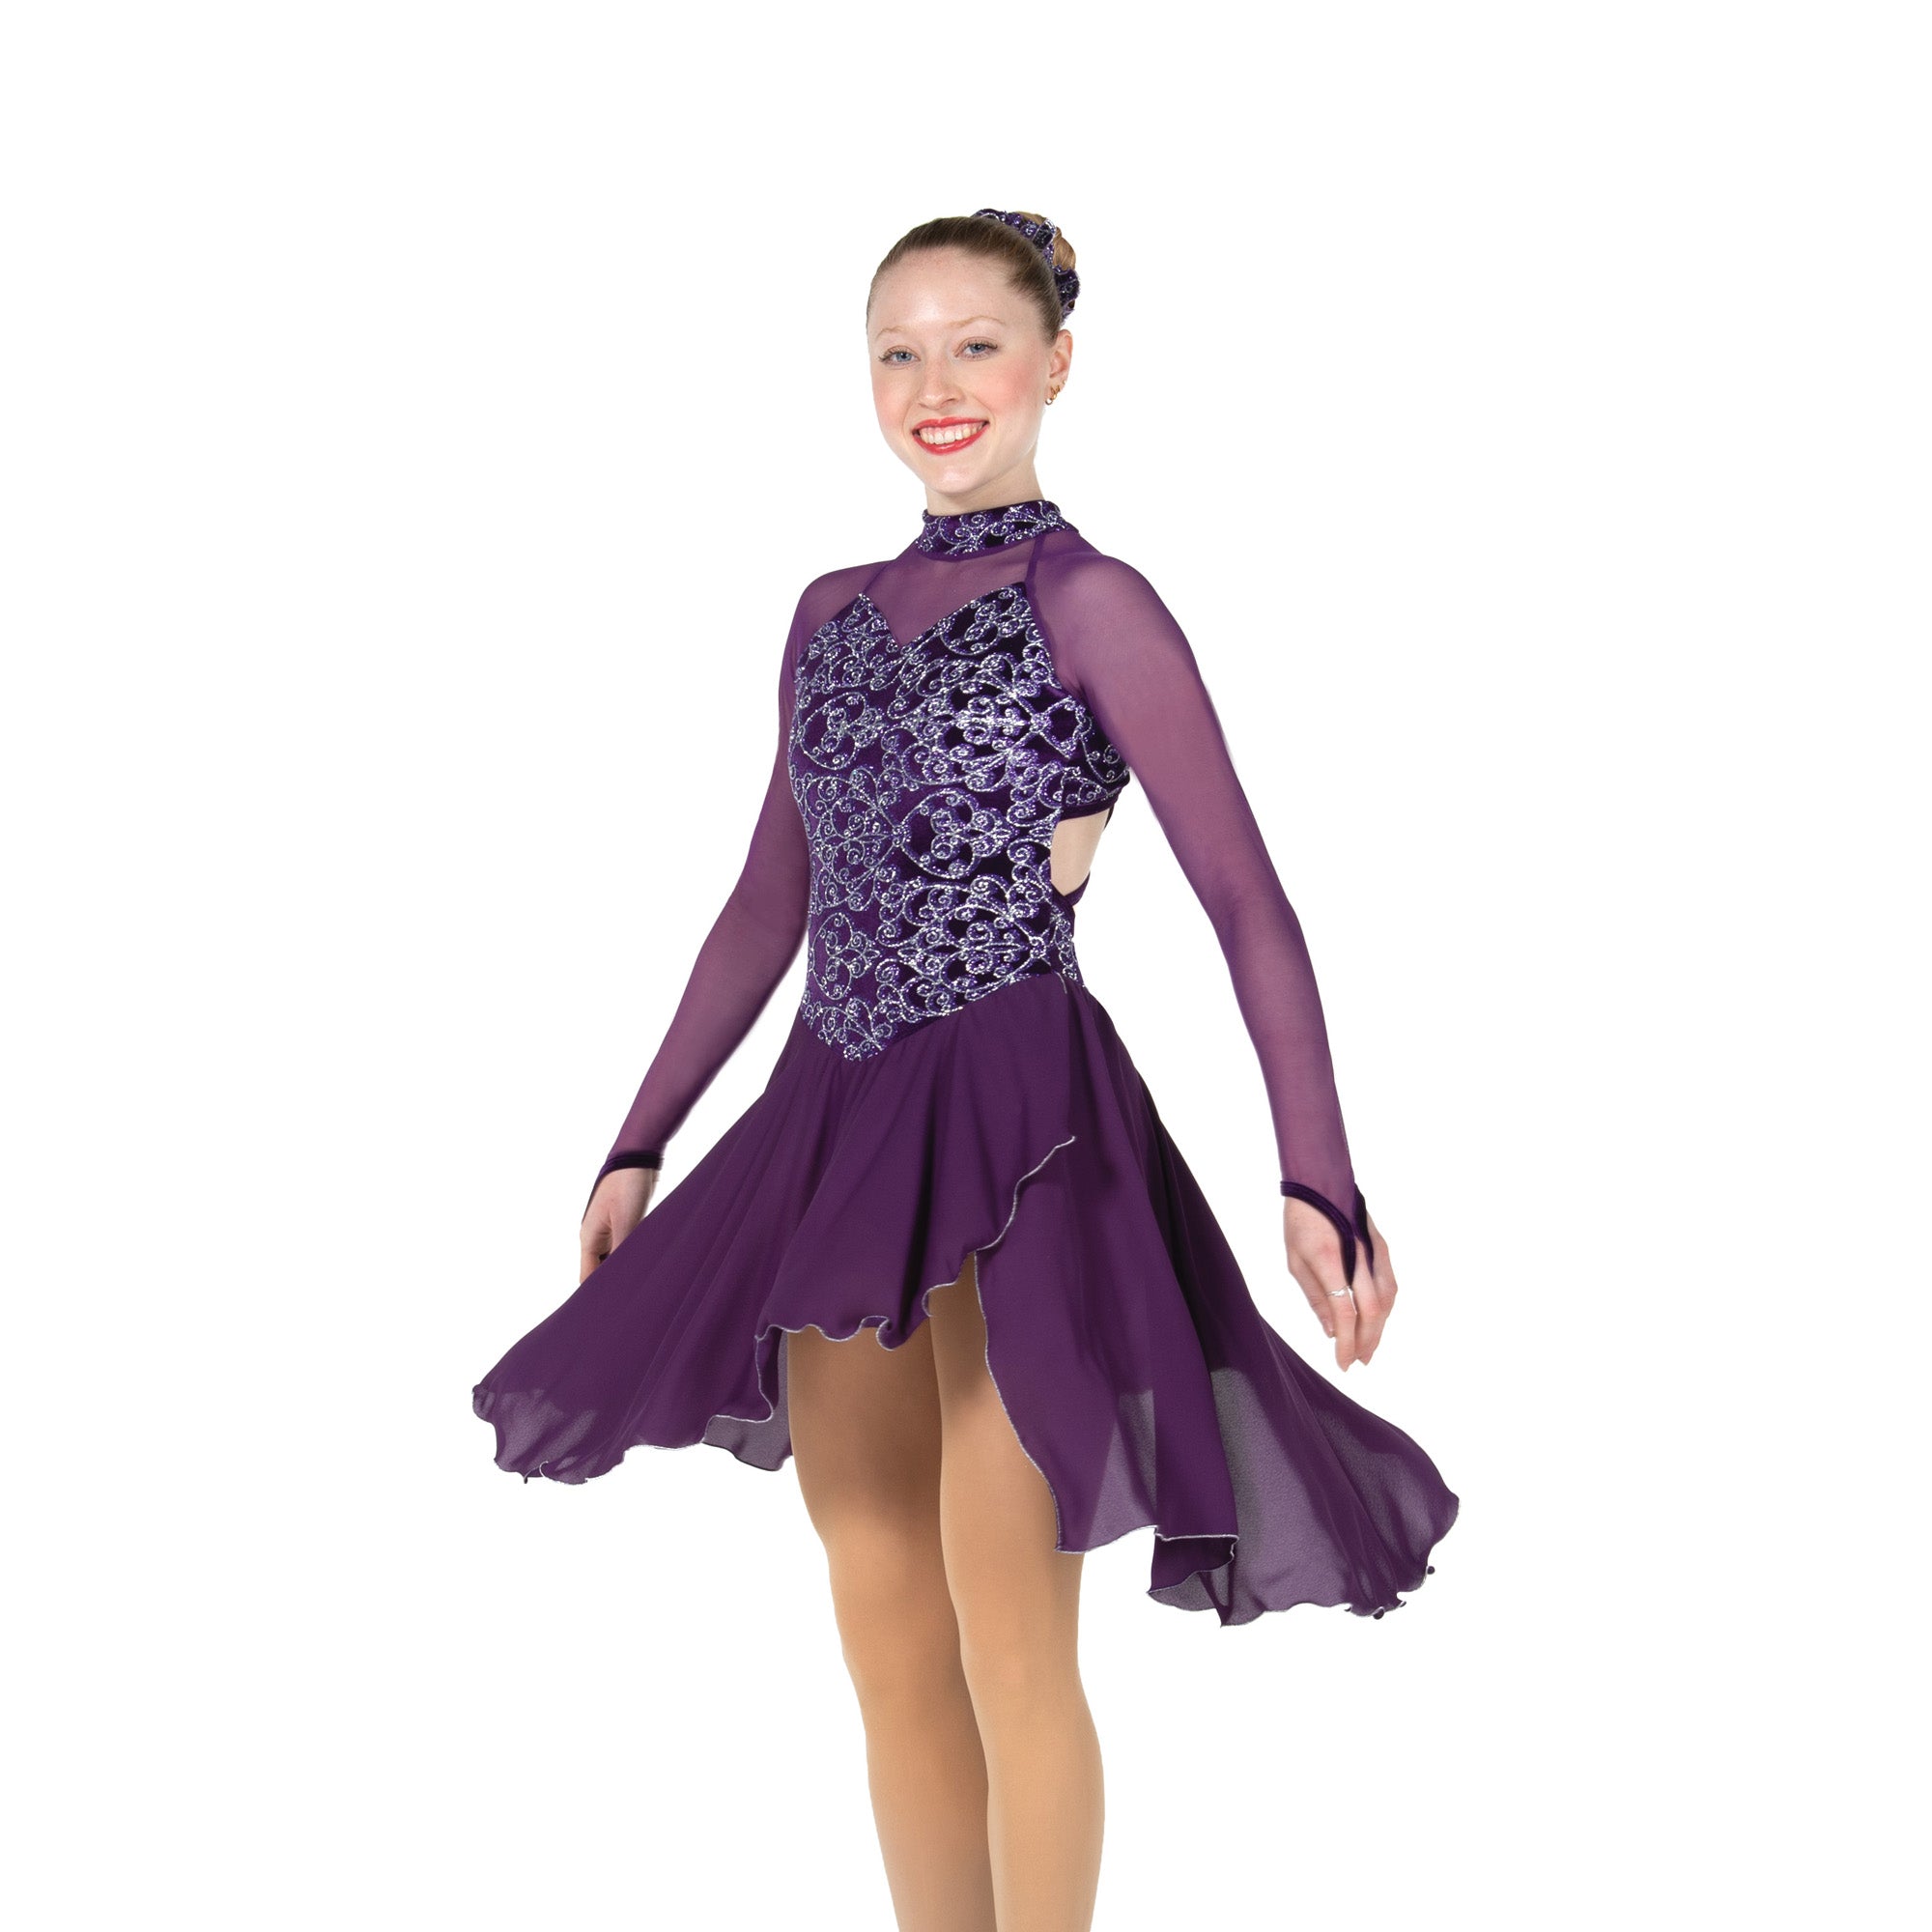 100 Trellistep Dance Dress in Purple by Jerry's